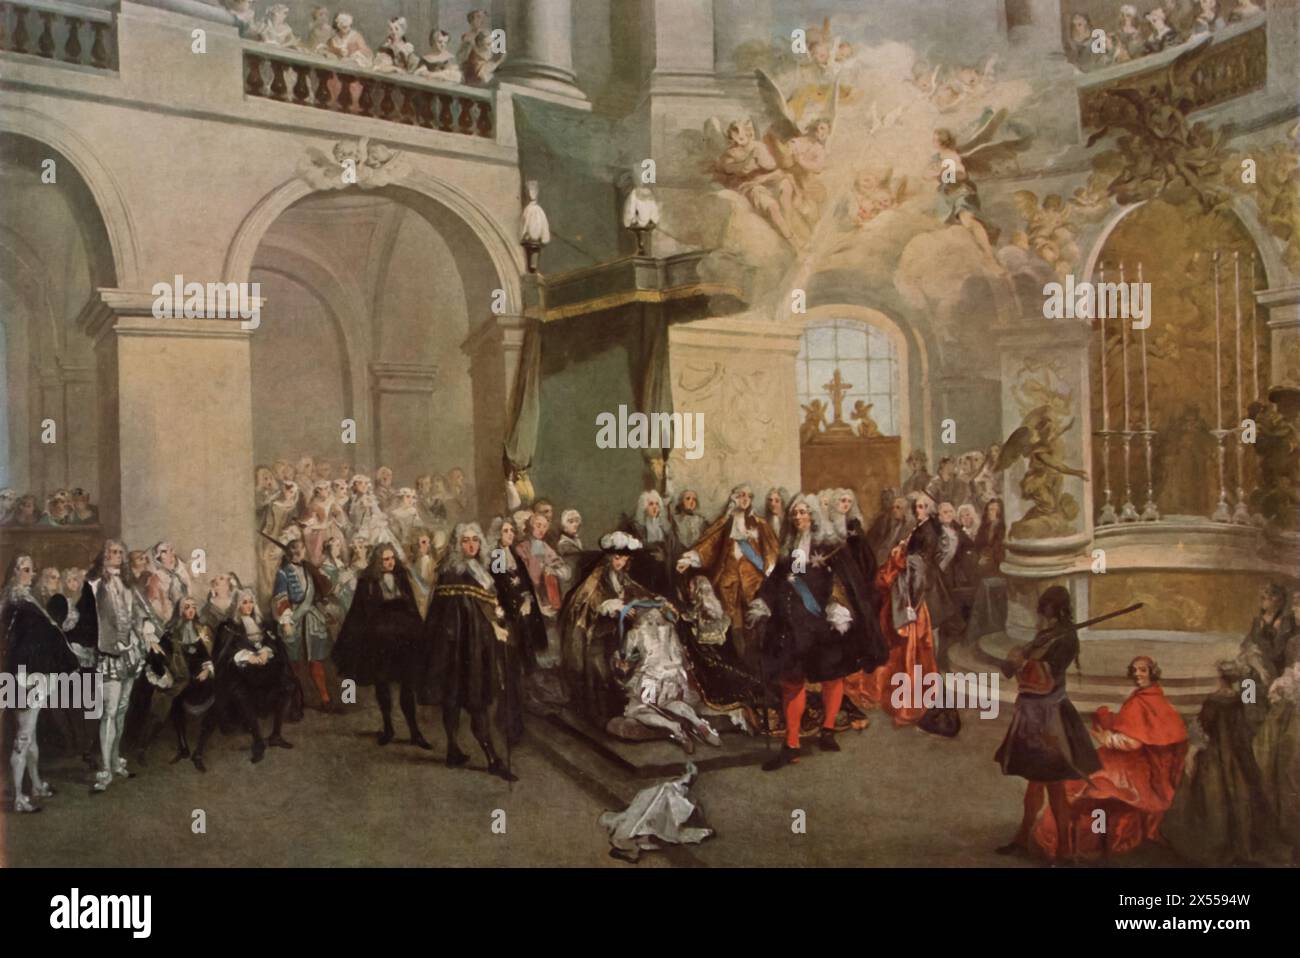 La réception de l'ordre du Saint-esprit par Nicolas Lancret, peinte en 1724, conservée au Musée du Louvre, Paris, France. Ce tableau capture un événement cérémoniel où sont reçus des membres de l’ordre du Saint-esprit, prestigieux ordre de chevalerie en France. Banque D'Images